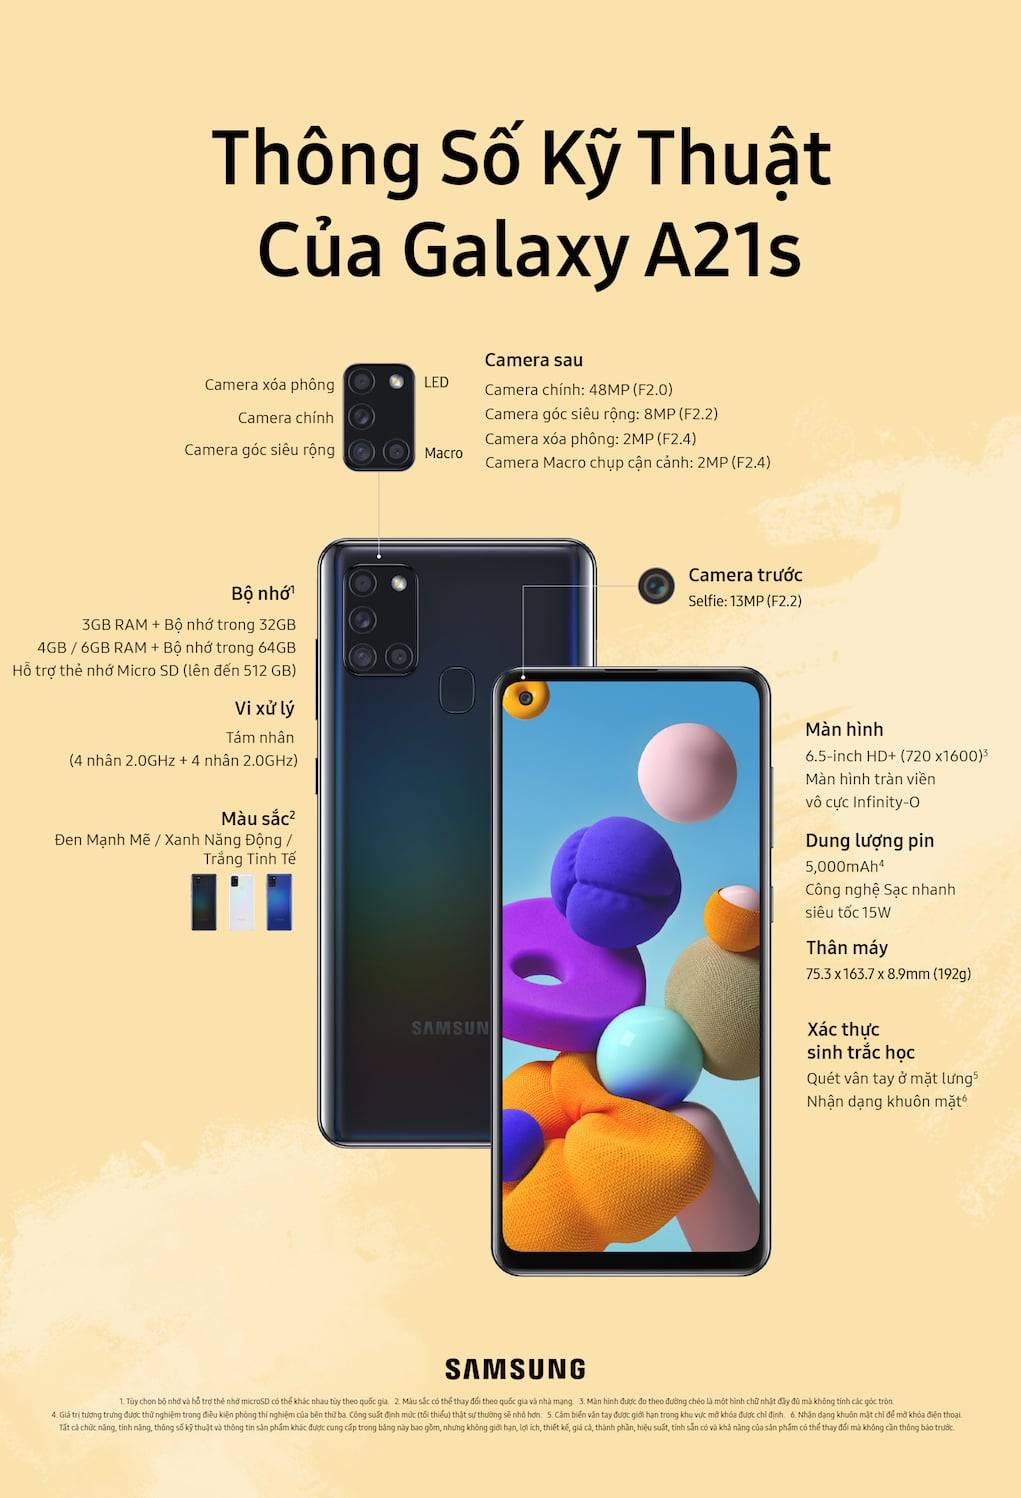 Samsung Galaxy A21s bán từ hôm nay, giá 4,7 và 5,7 triệu